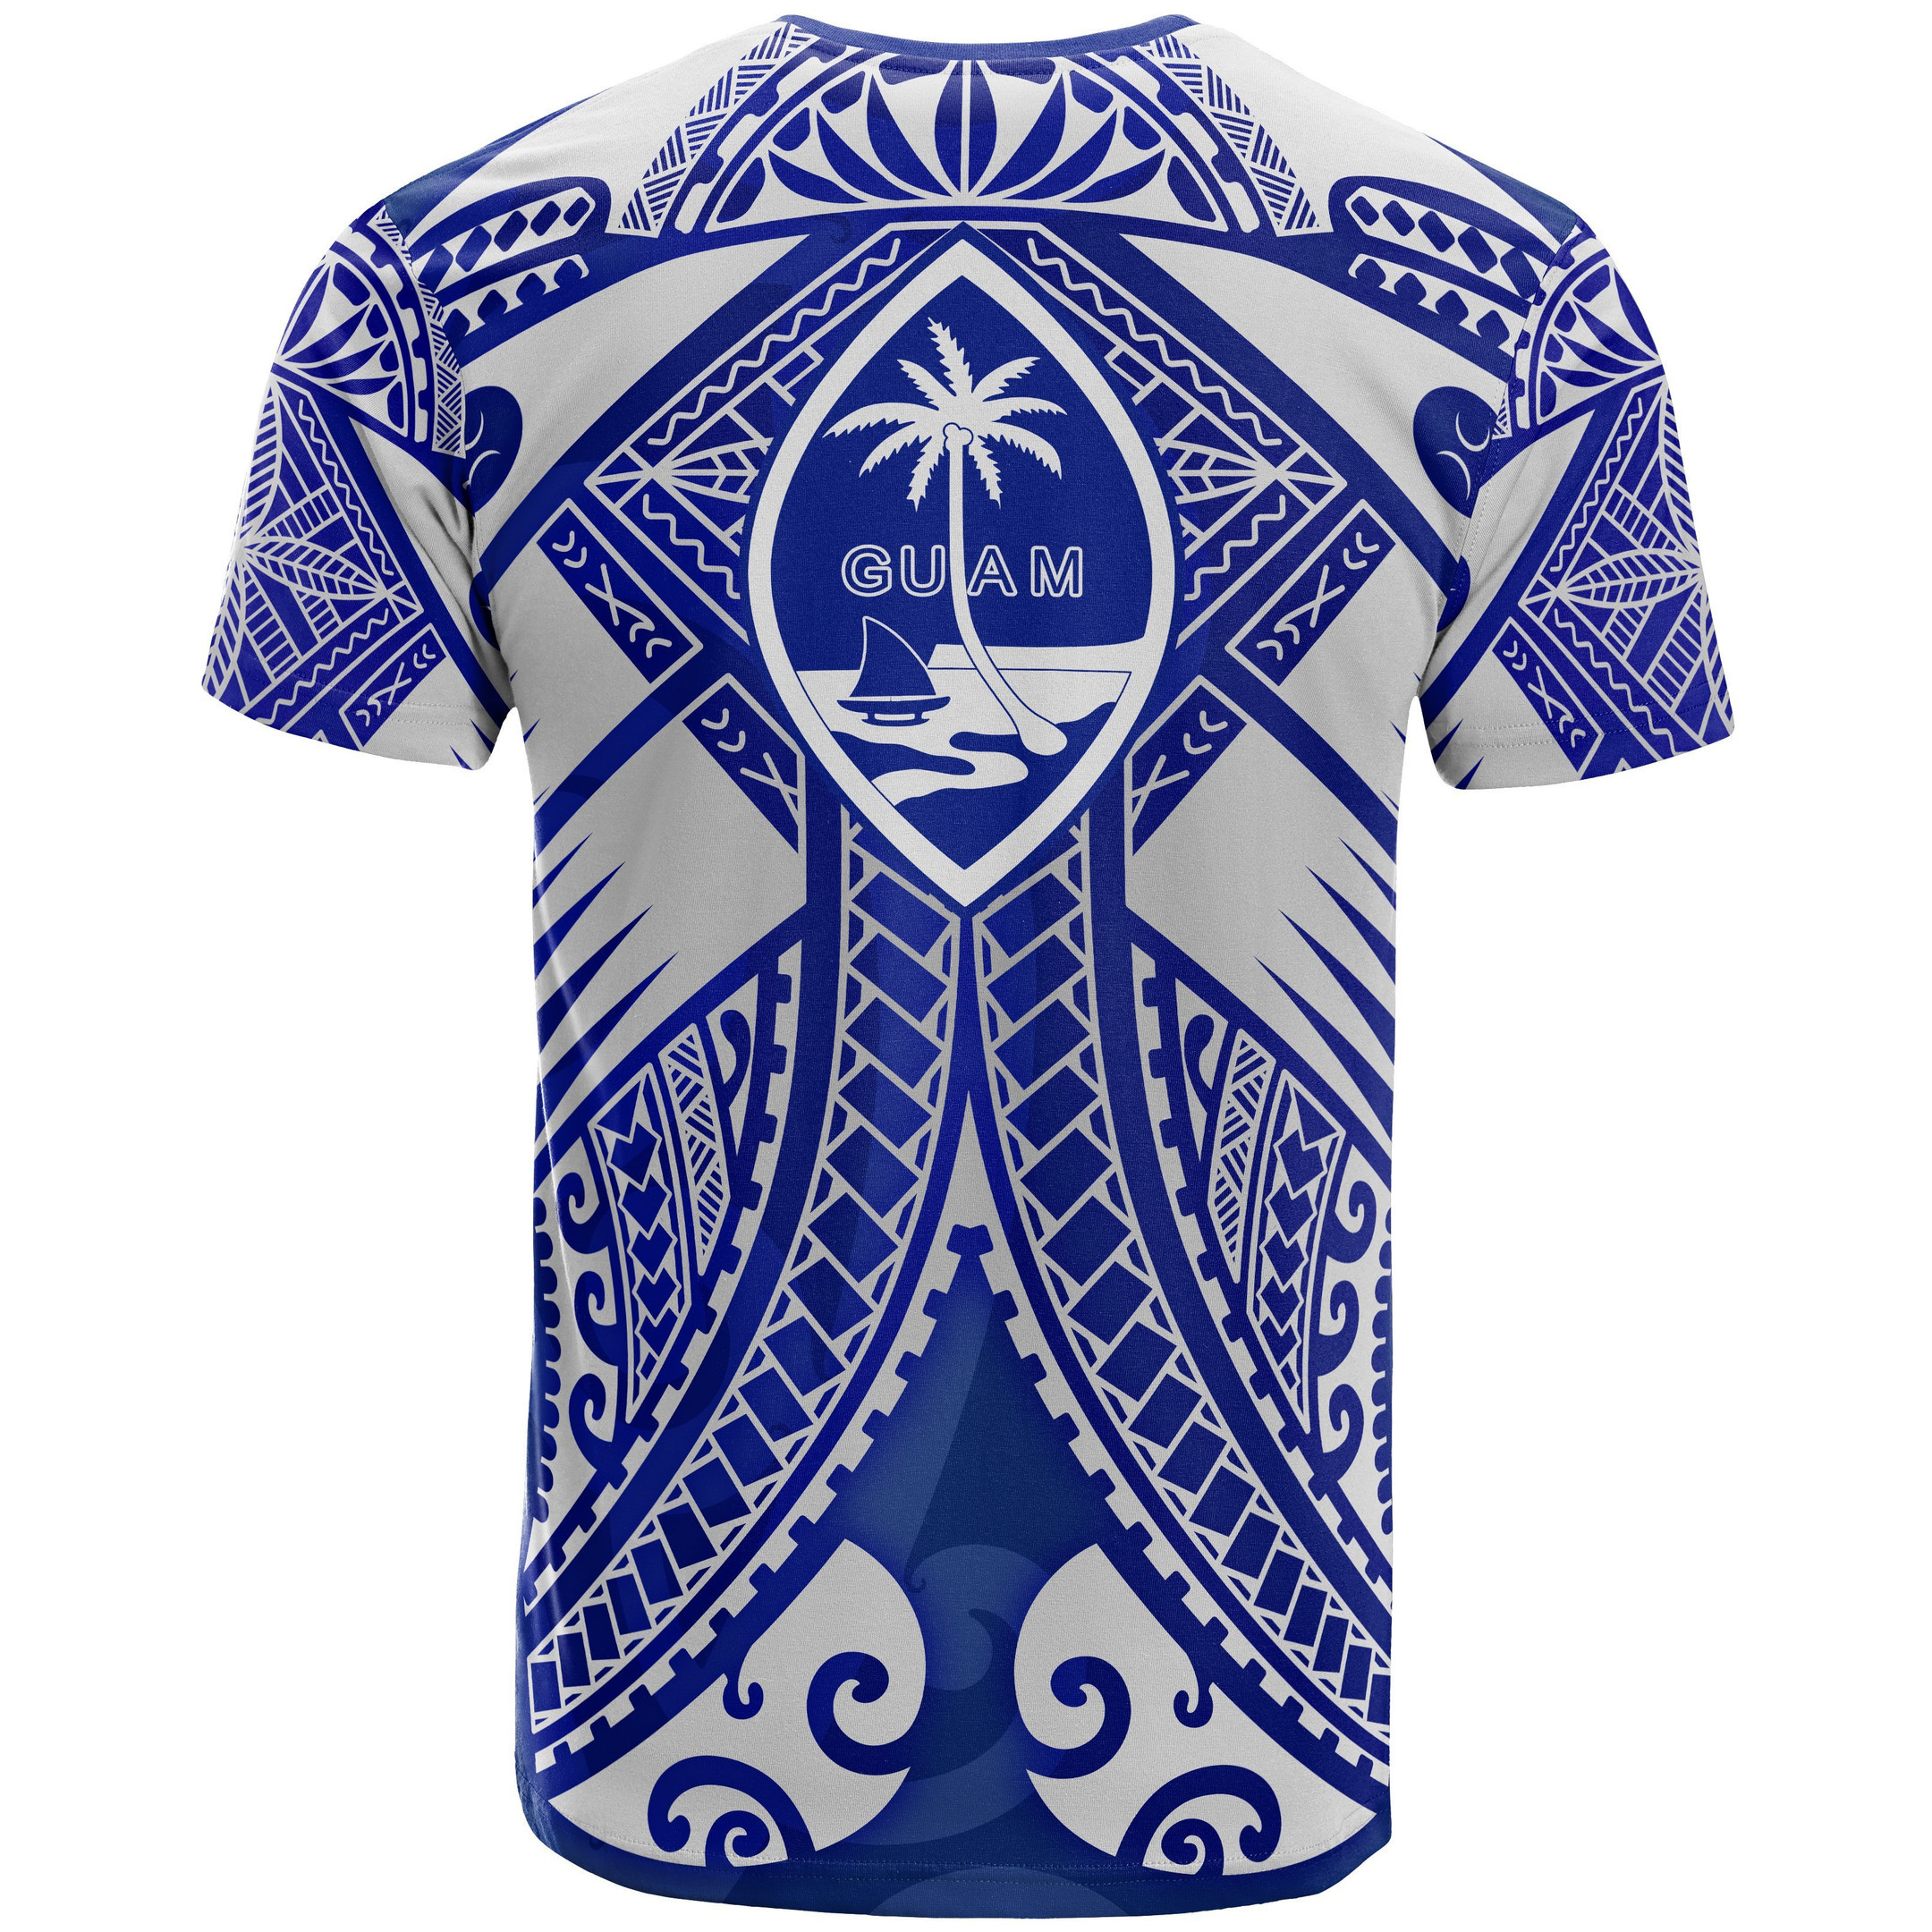 Guam Polynesian T-Shirt - Guam White Seal with Polynesian Tattoo Ver 02 - BN18